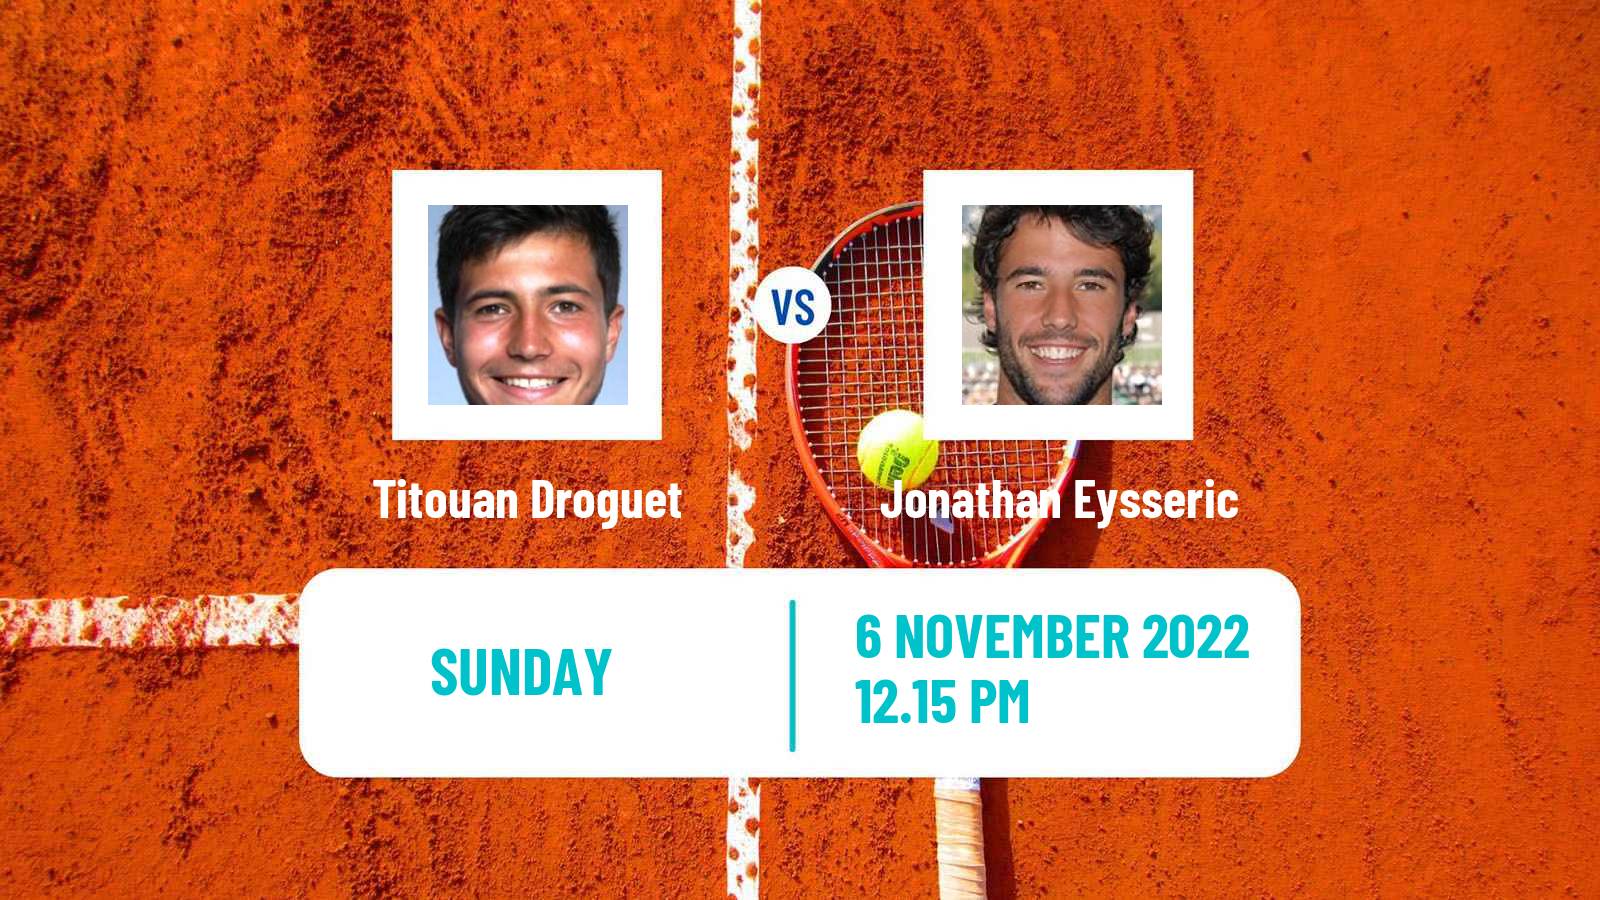 Tennis ATP Challenger Titouan Droguet - Jonathan Eysseric